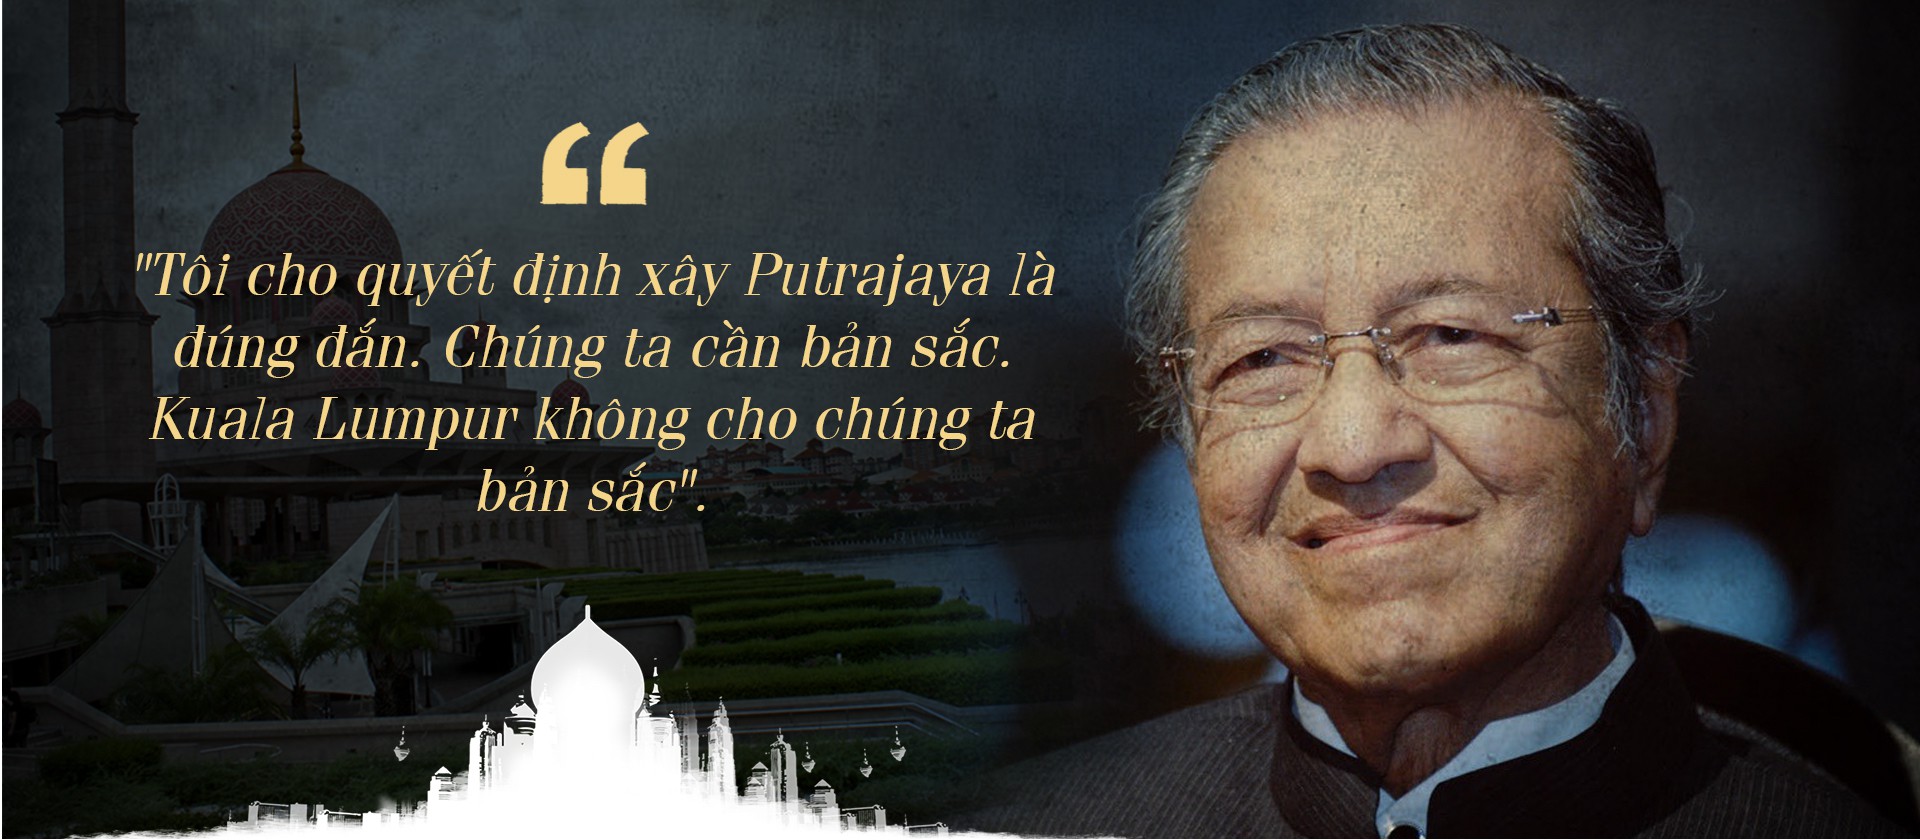 Khu đô thị mới Putrajaya - dấu ấn của Thủ tướng Mahathir - Ảnh 4.